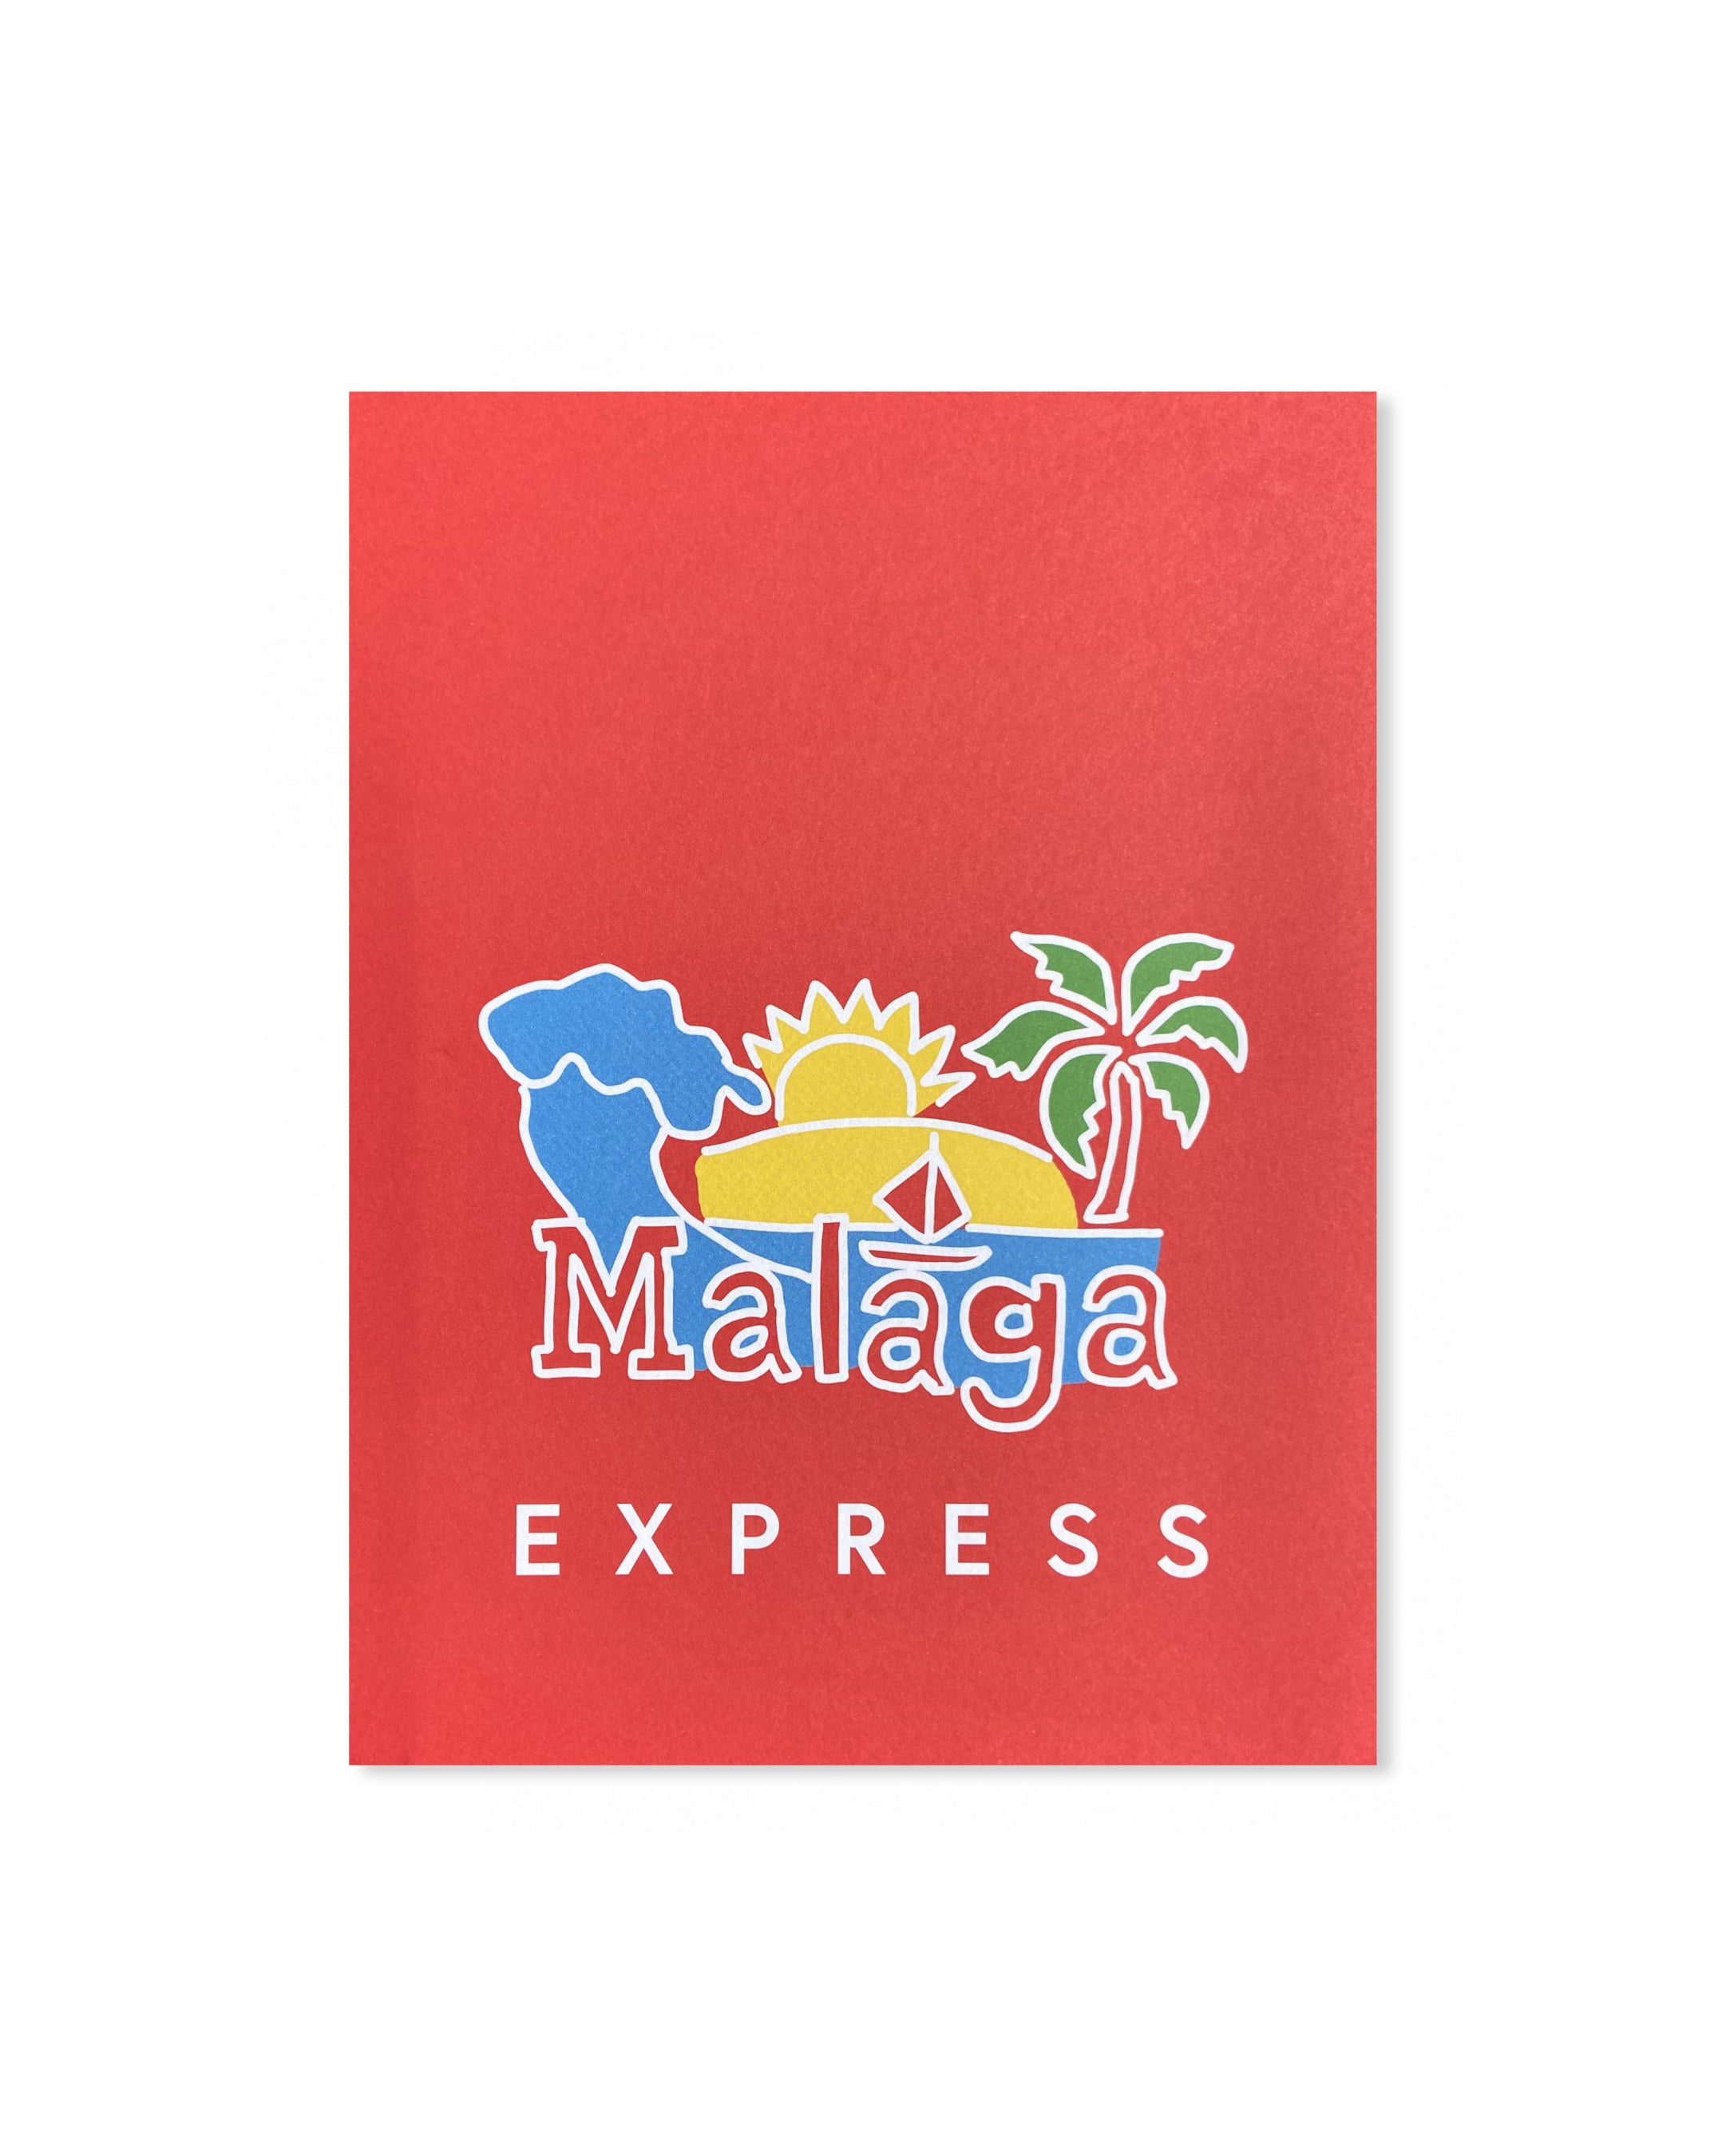 Malaga Express